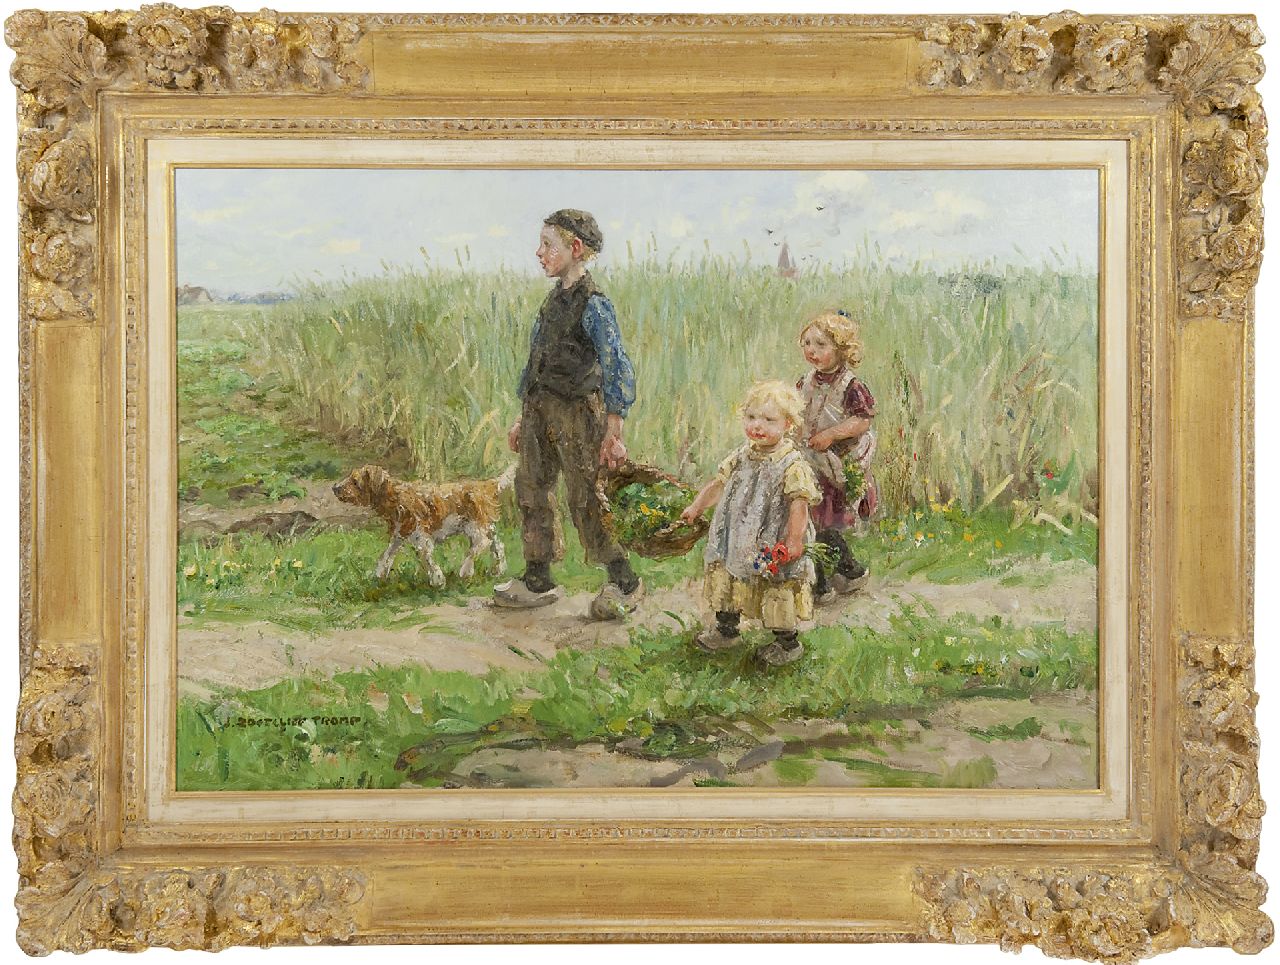 Zoetelief Tromp J.  | Johannes 'Jan' Zoetelief Tromp, Along the wheat field, Blaricum, oil on canvas 59.3 x 88.2 cm, signed l.l.